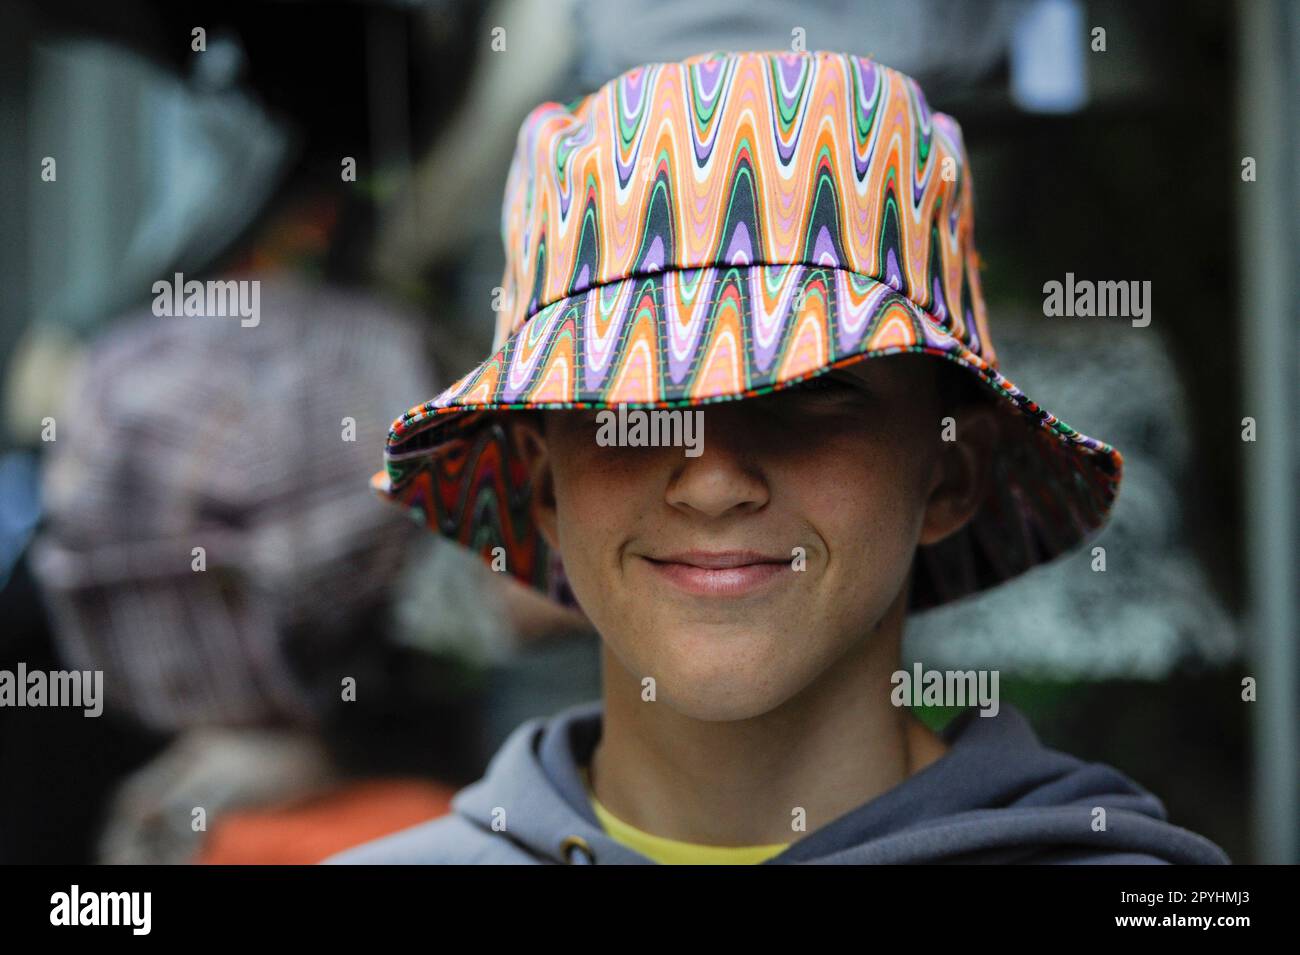 Giovane ragazzo con un cappello sgargiante sul sorriso Foto Stock